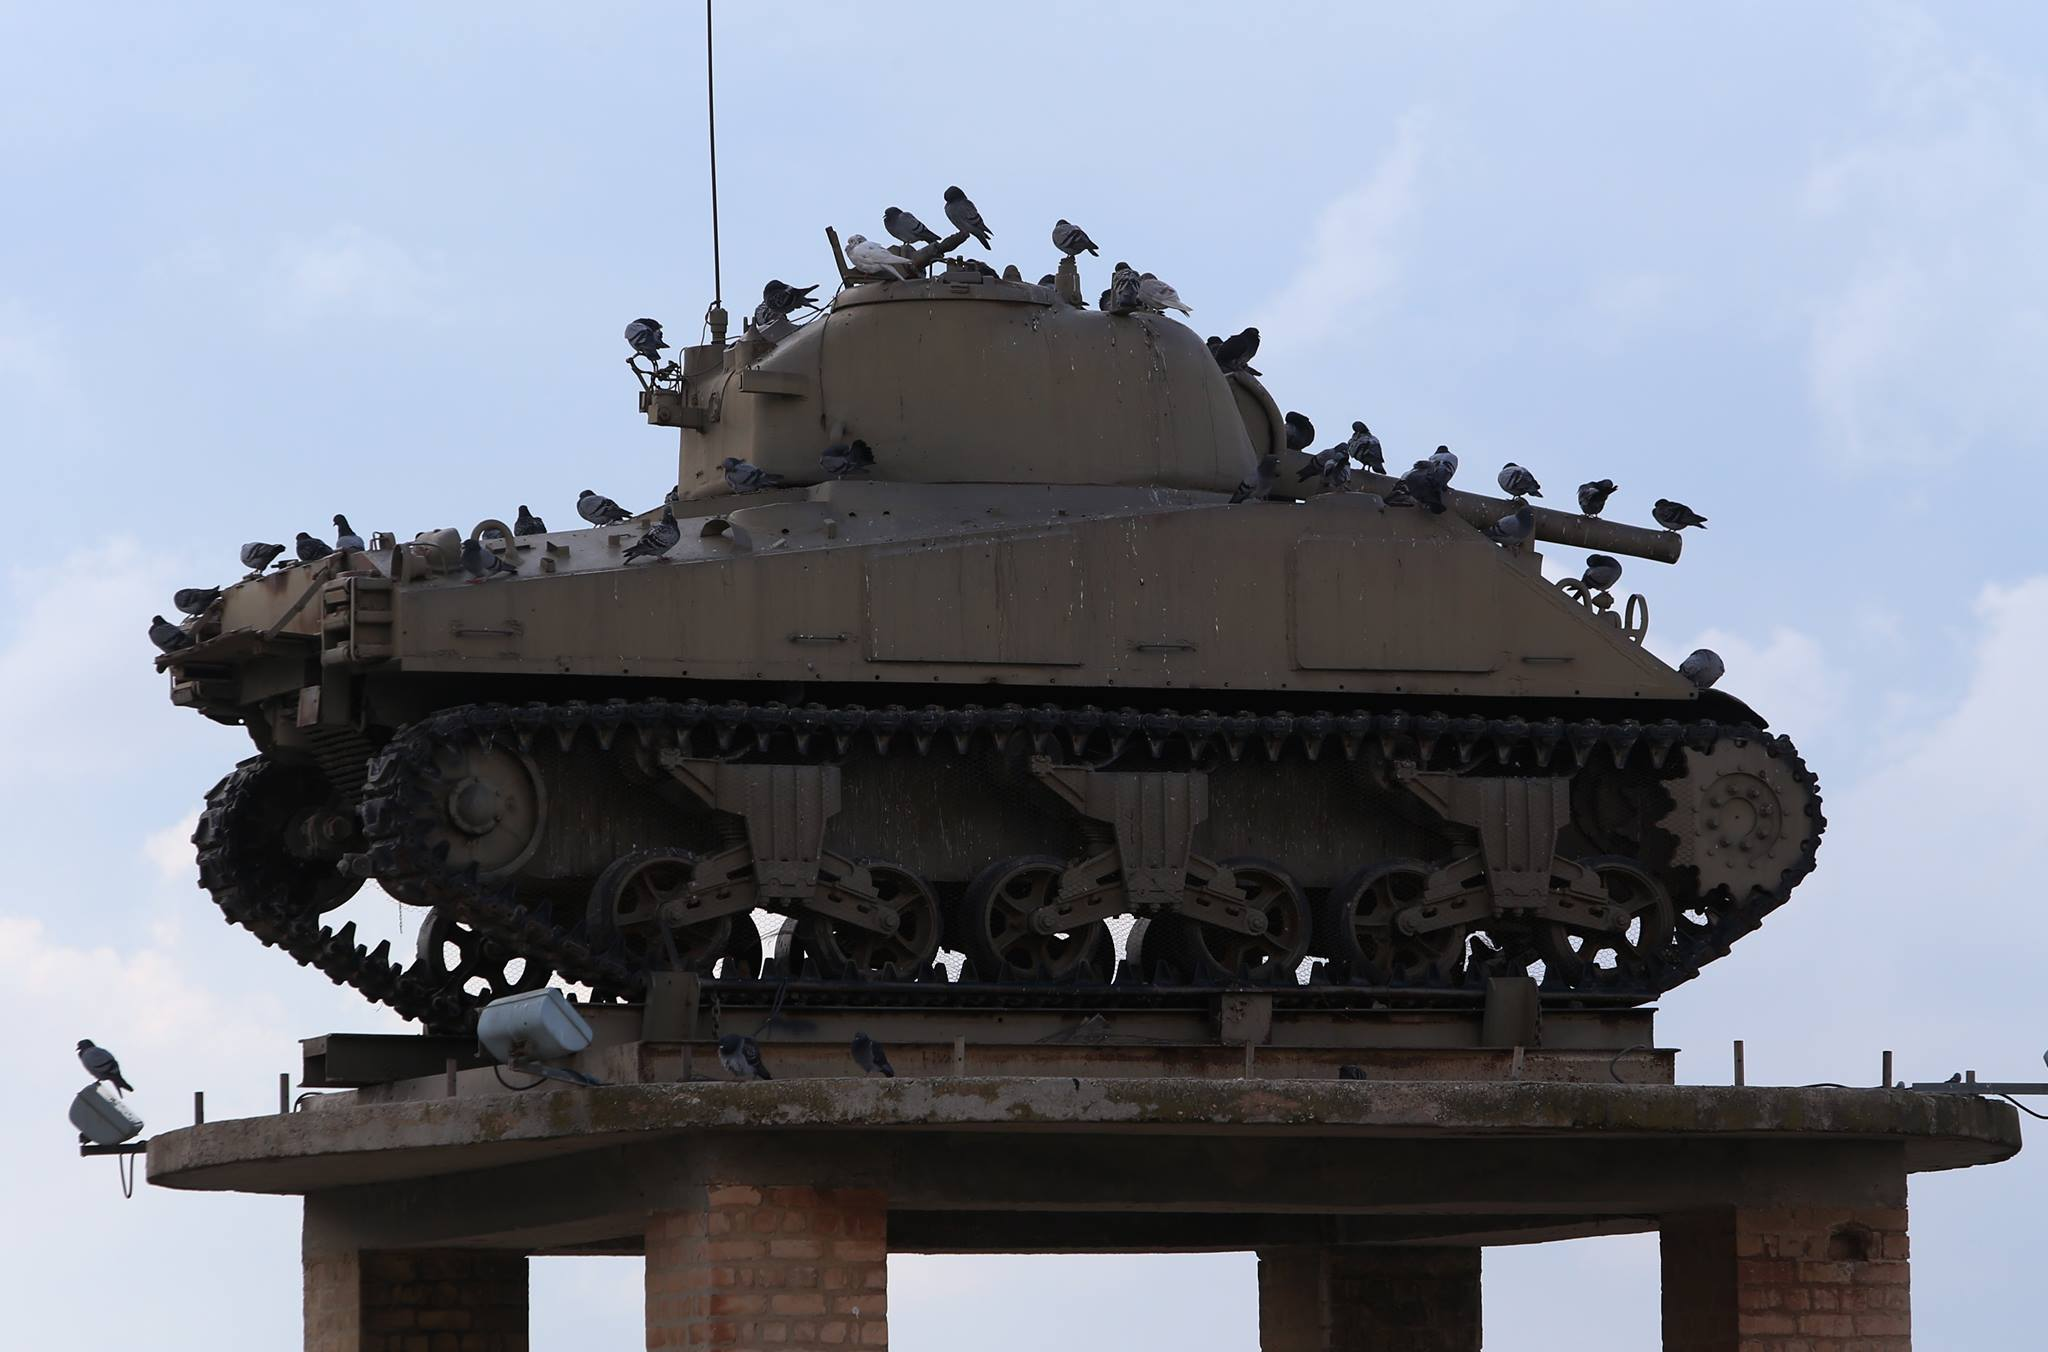 יונים יושבות על טנק שנמצא על עמודים במוזיאון יד לשריון